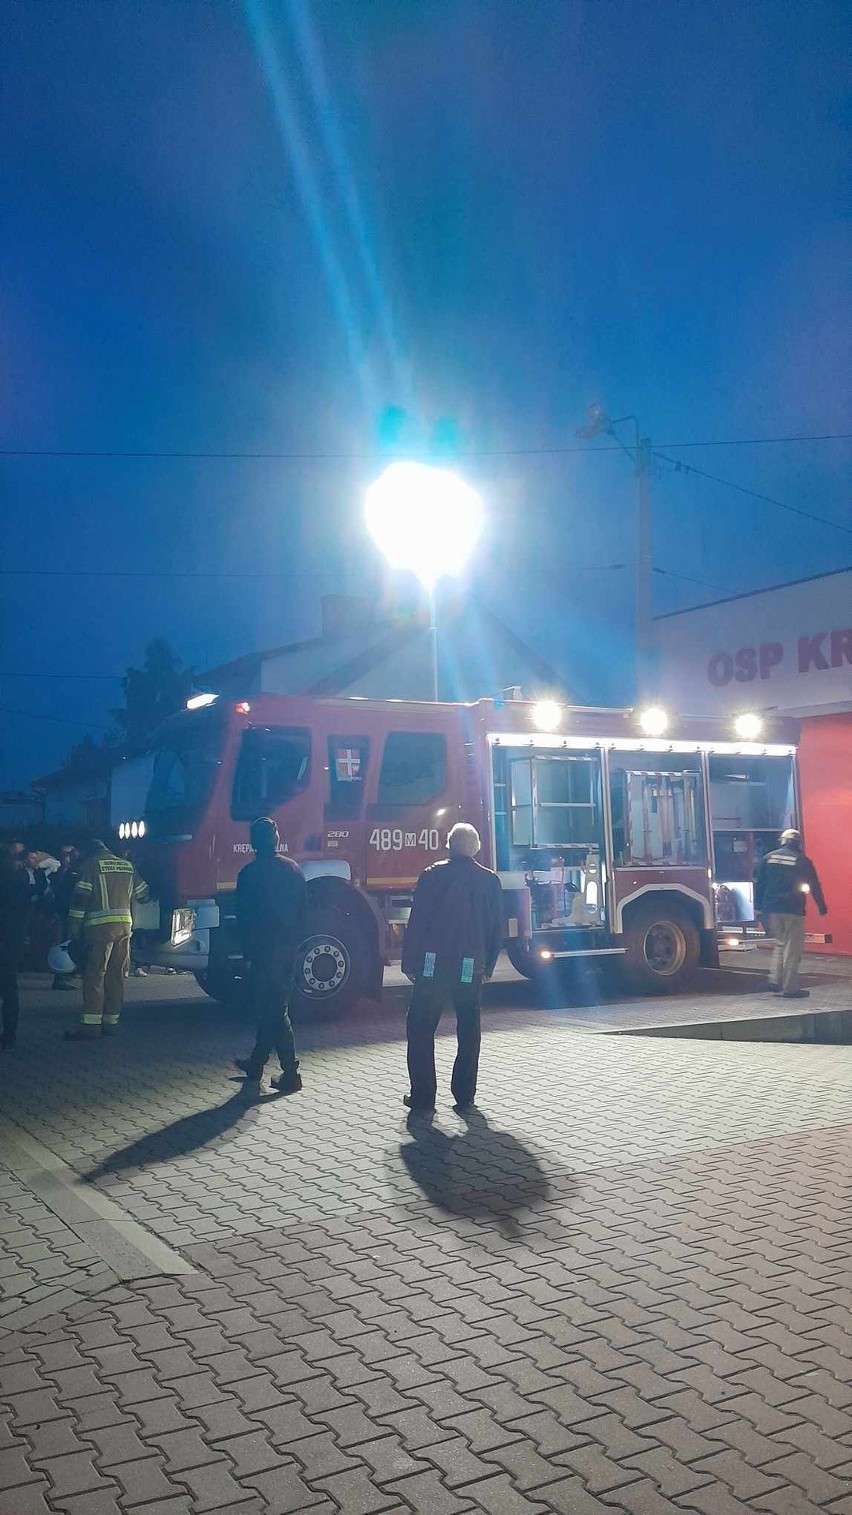 Strażacy z Krępy Kościelnej w gminie Lipsko dostali nowy wóz ratowniczo-gaśniczy za ponad milion złotych. Zobacz zdjęcia